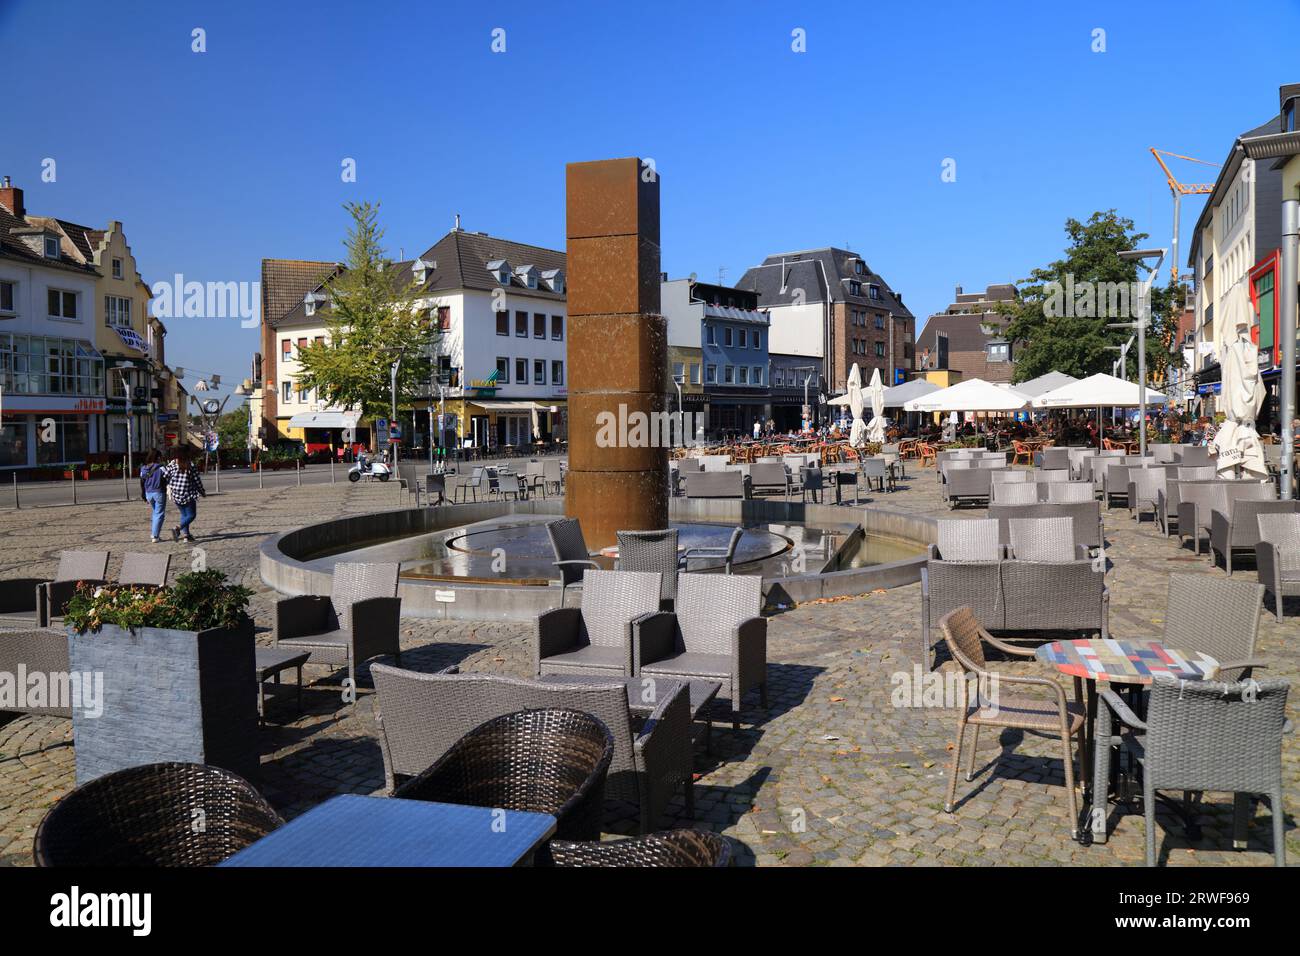 MÖNCHENGLADBACH, DEUTSCHLAND - 18. SEPTEMBER 2020: Besucher besuchen den Alten Markt Mönchengladbach, eine große Stadt in Nordrhein-Westfalen Stockfoto